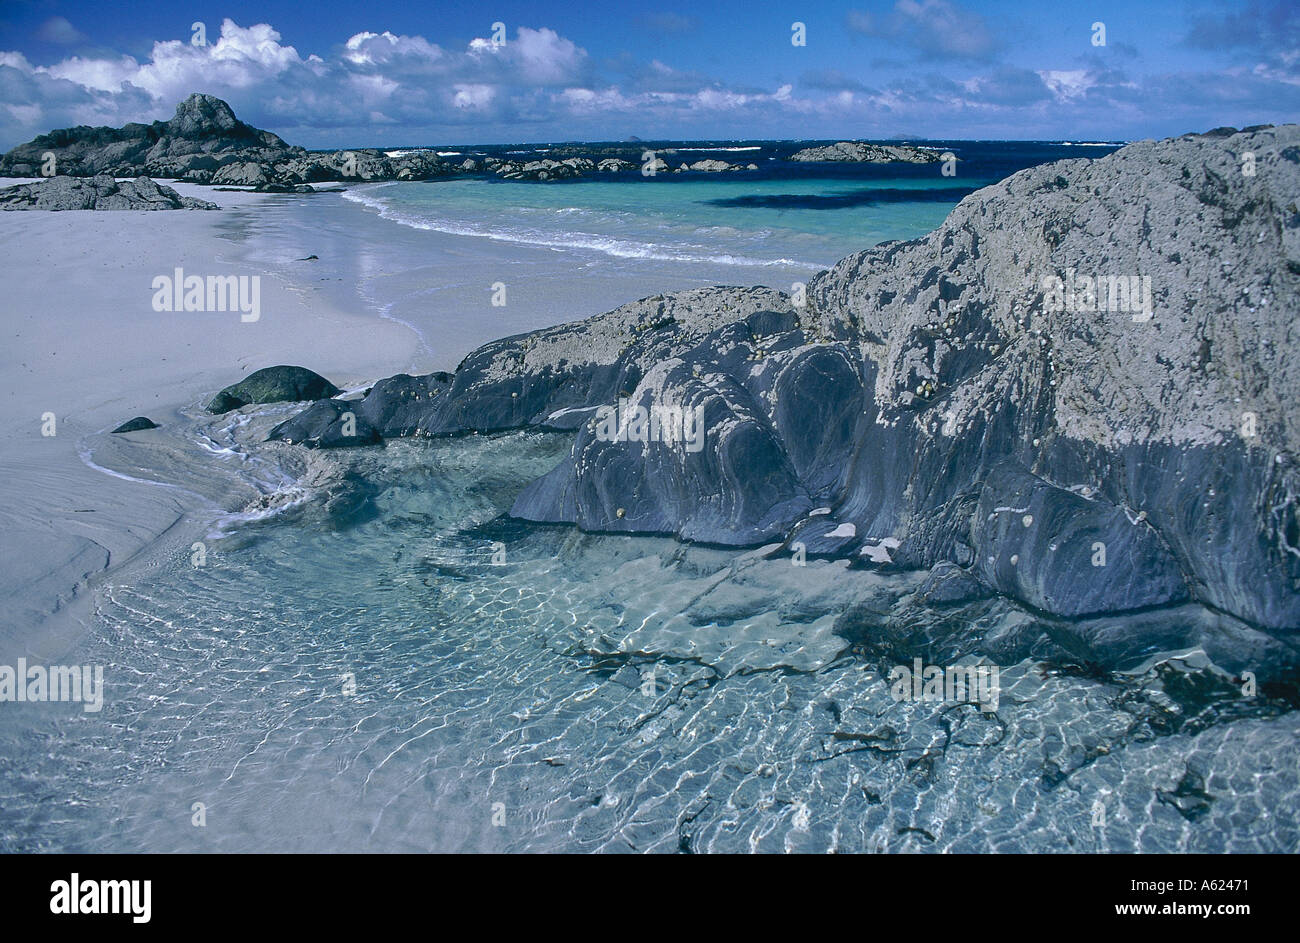 Escocia isla de Iona con rocas de playa de arena blanca y aguas cristalinas. Foto de stock